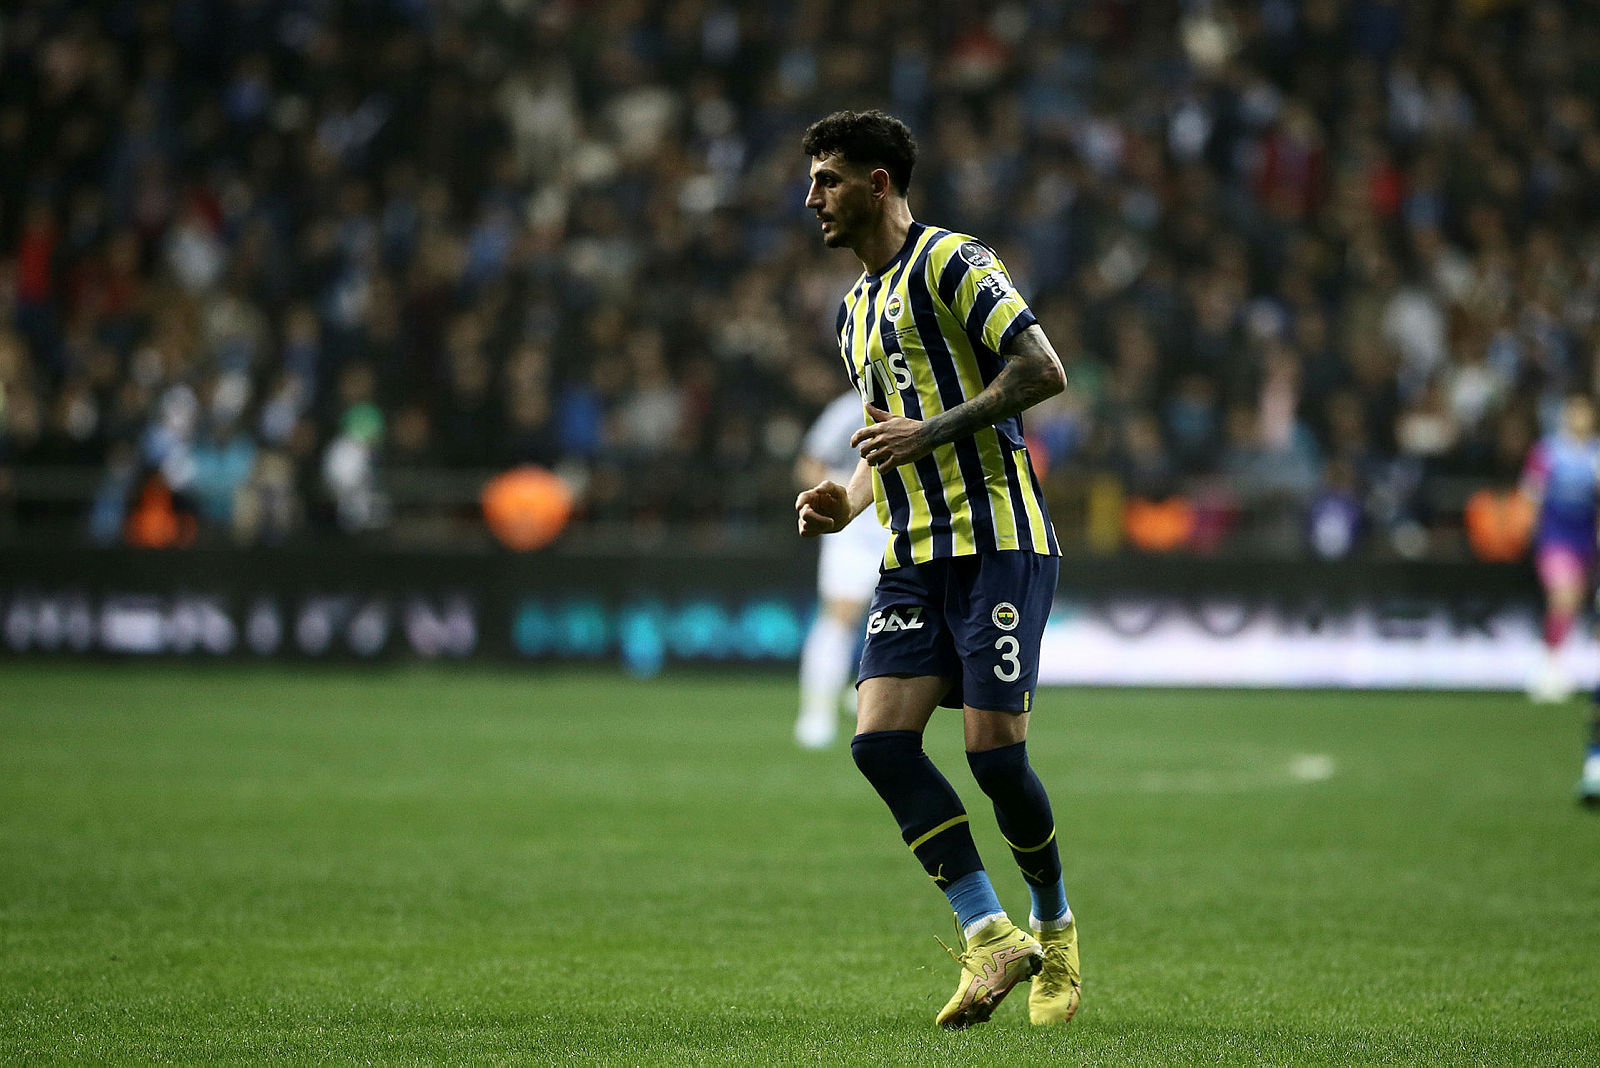 Transferi duyurdular! Fenerbahçe’den Angelo Gabriel için dudak uçuklatan teklif